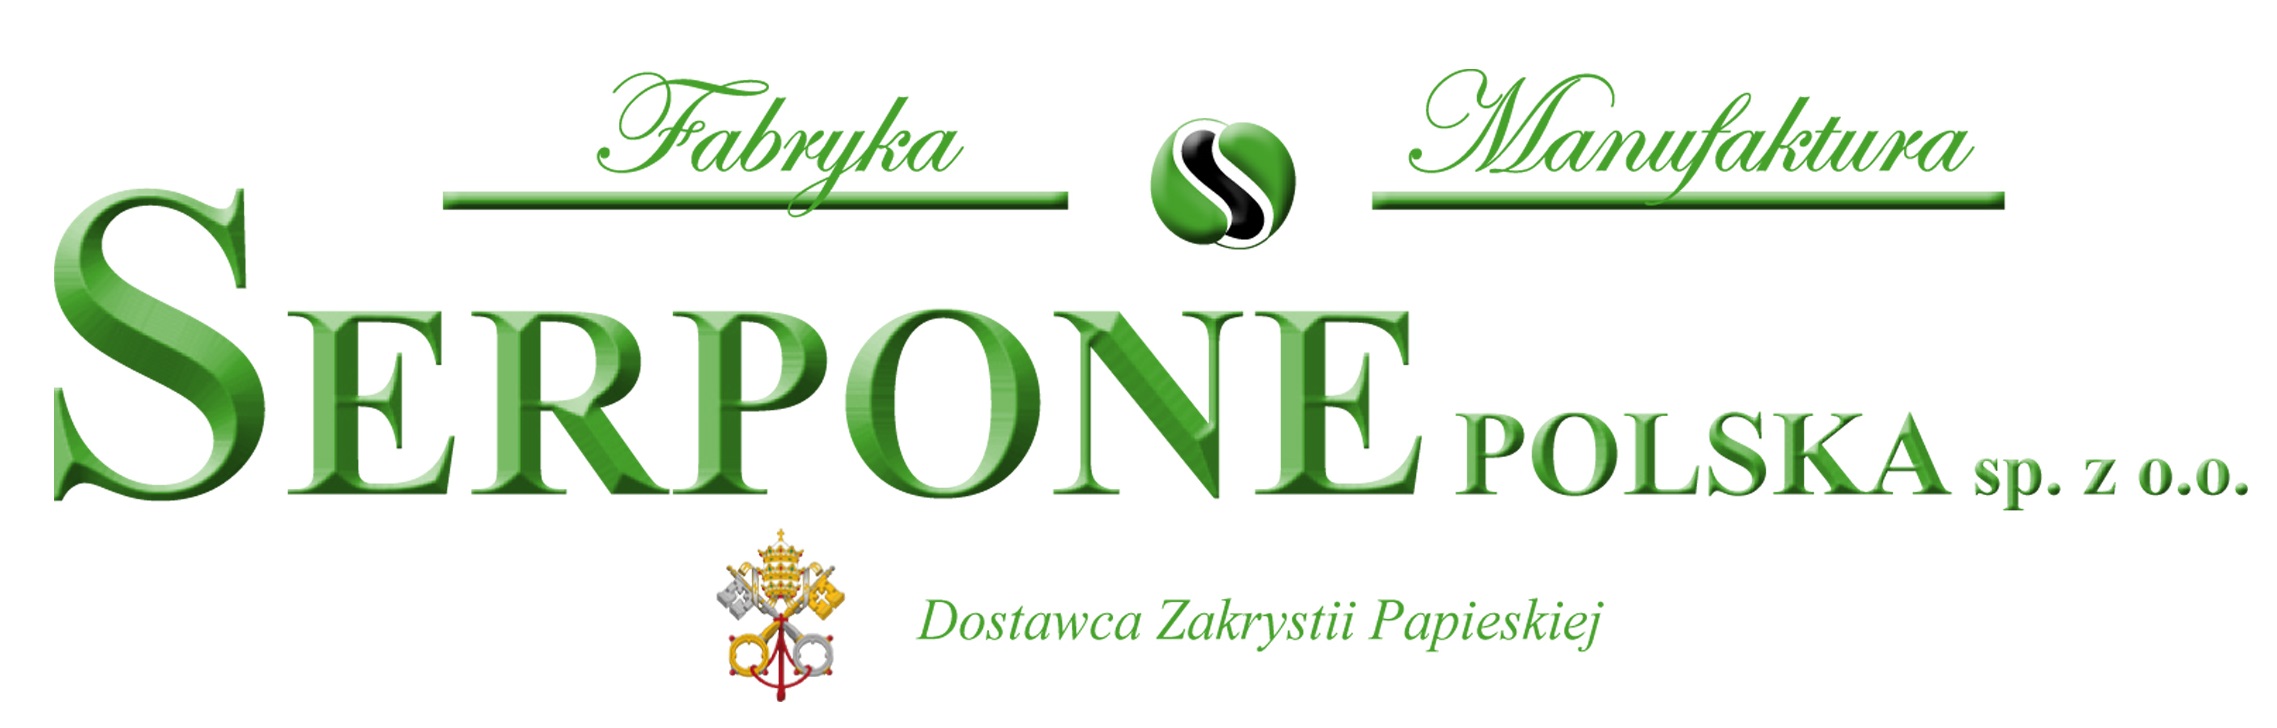 Serpone Polska Sp. z o.o.